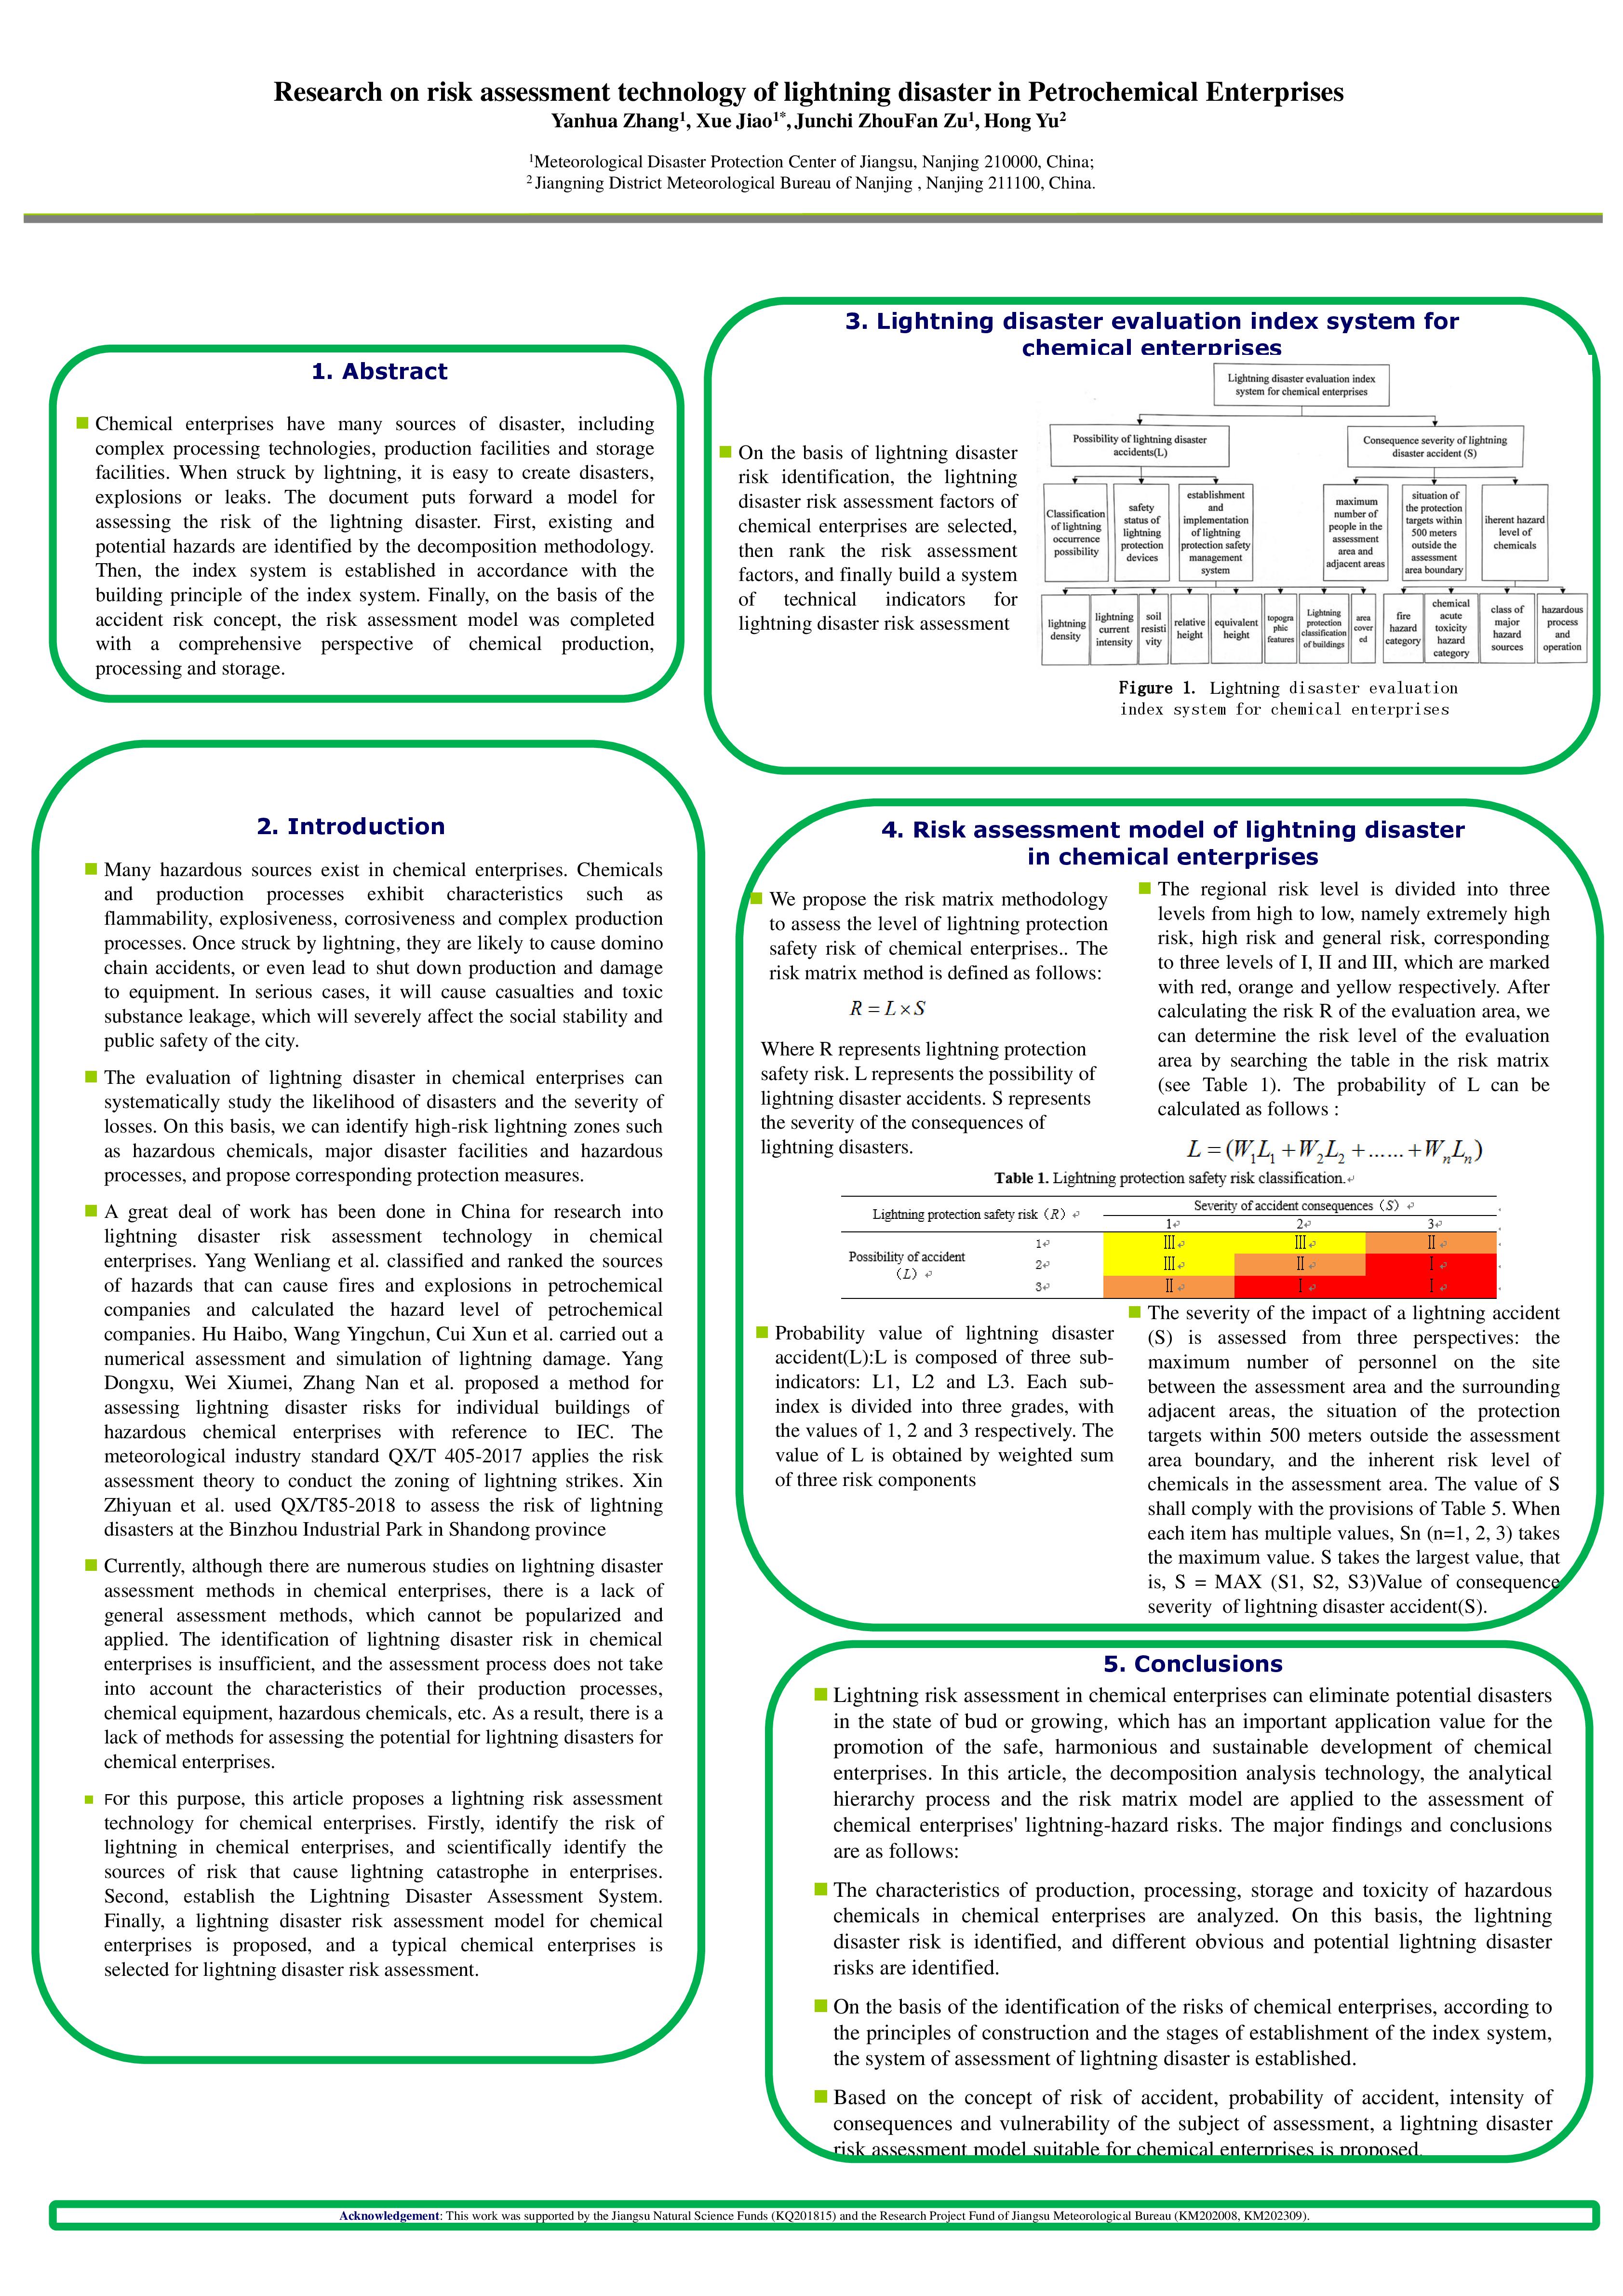 (UIF3AVNHIF)Research on risk assessment technology of lightning disaster in Petrochemical Enterprises--001.jpg